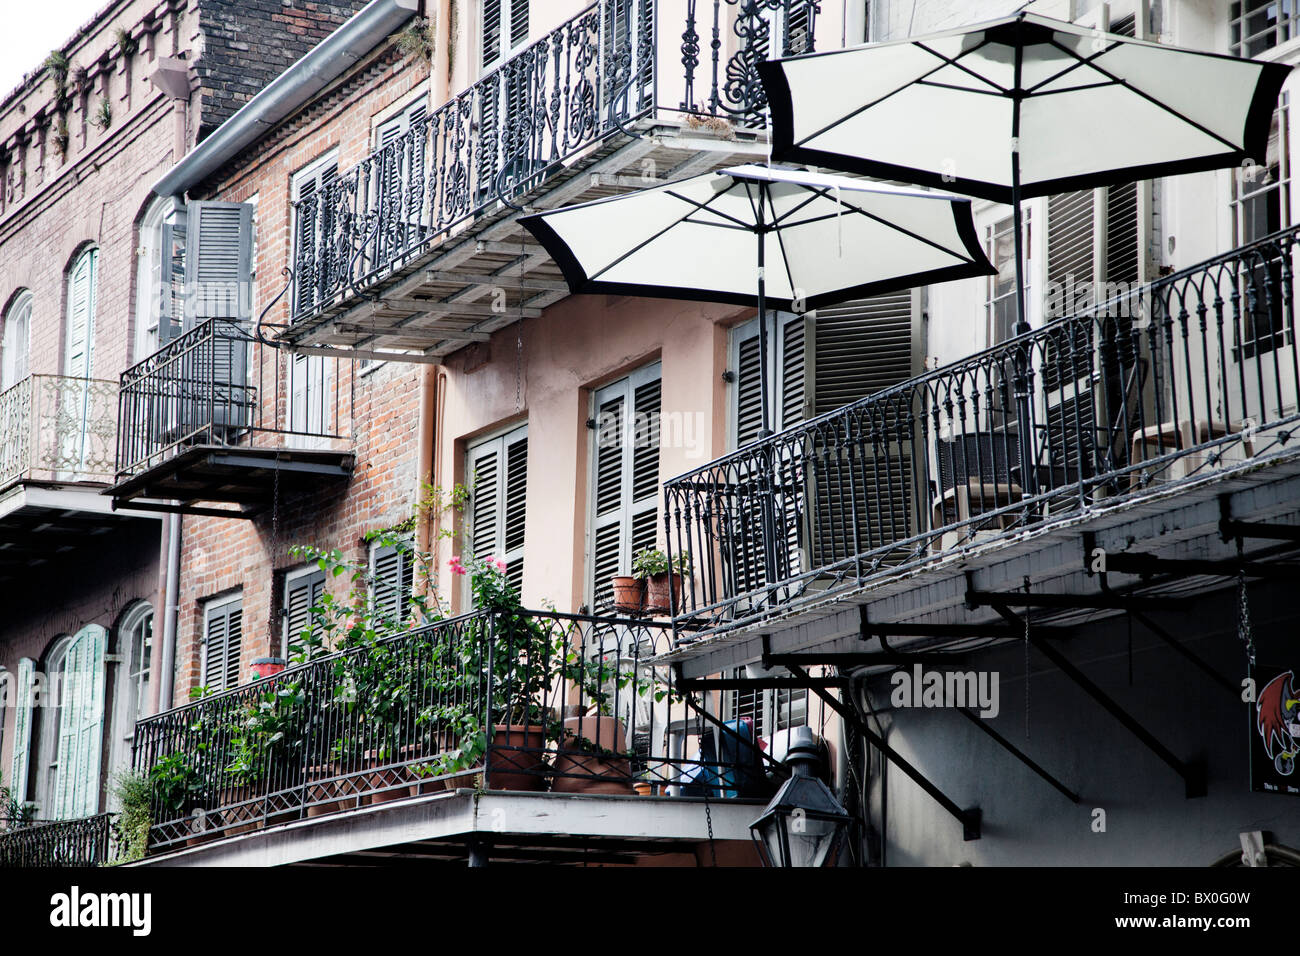 Die Architektur im spanischen Stil des French Quarter von New Orleans, Louisiana stammt aus Hunderten von Jahren den 1700er Jahren. Stockfoto